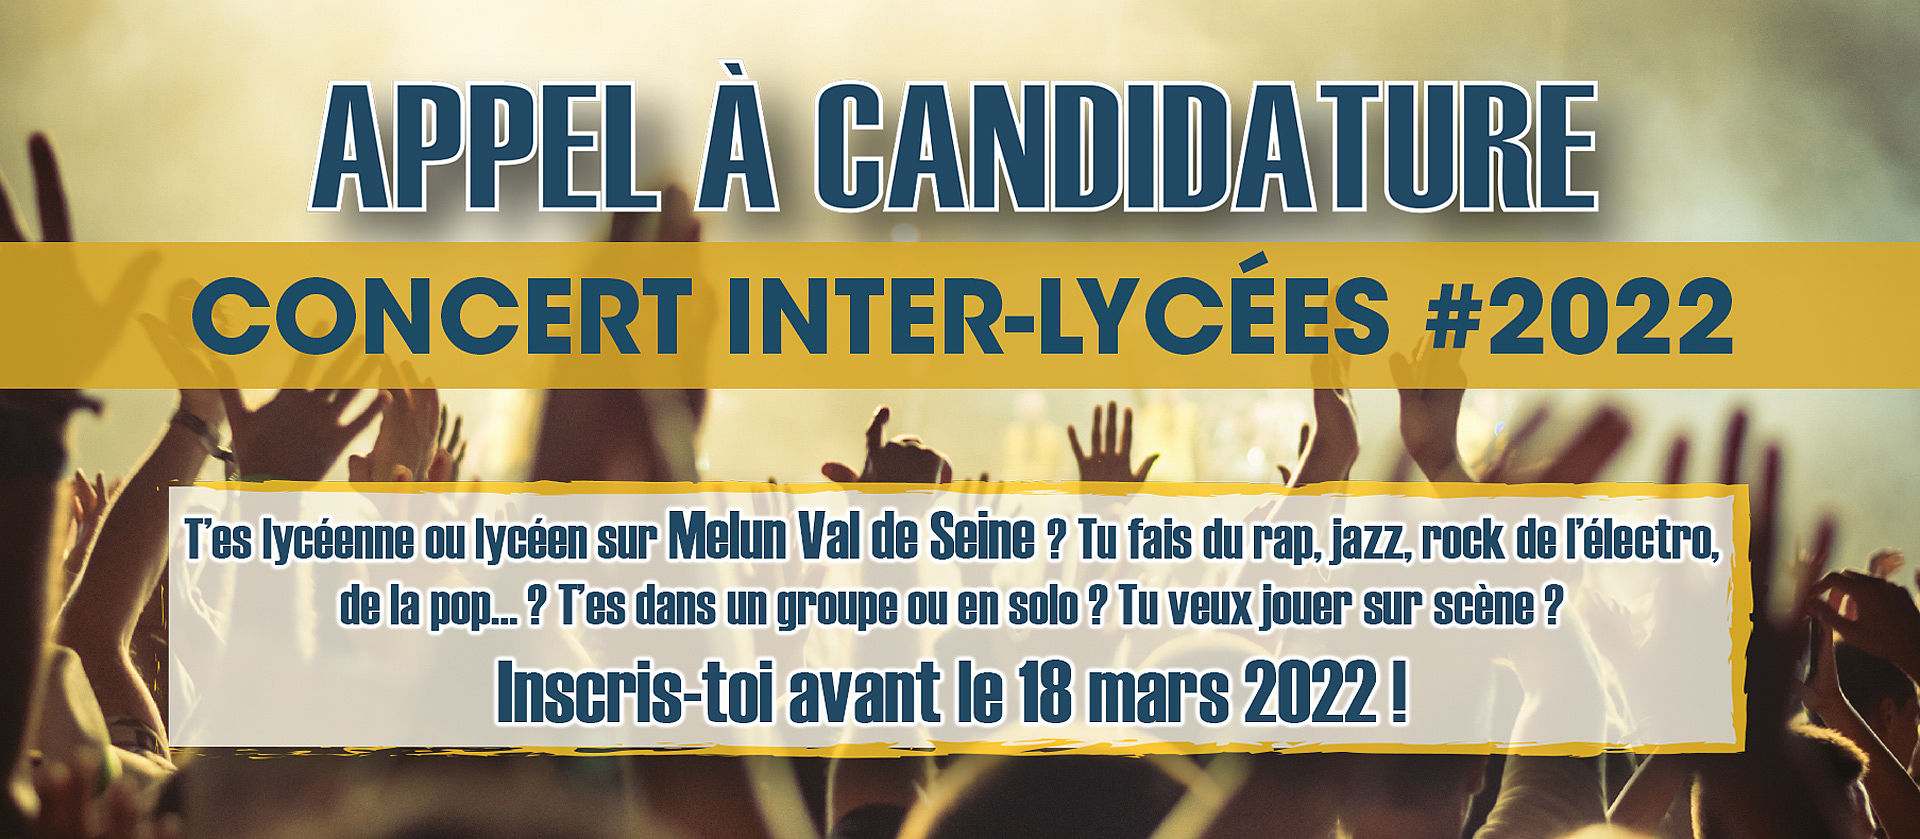 Appel à candidatures concert Inter-Lycées 2022